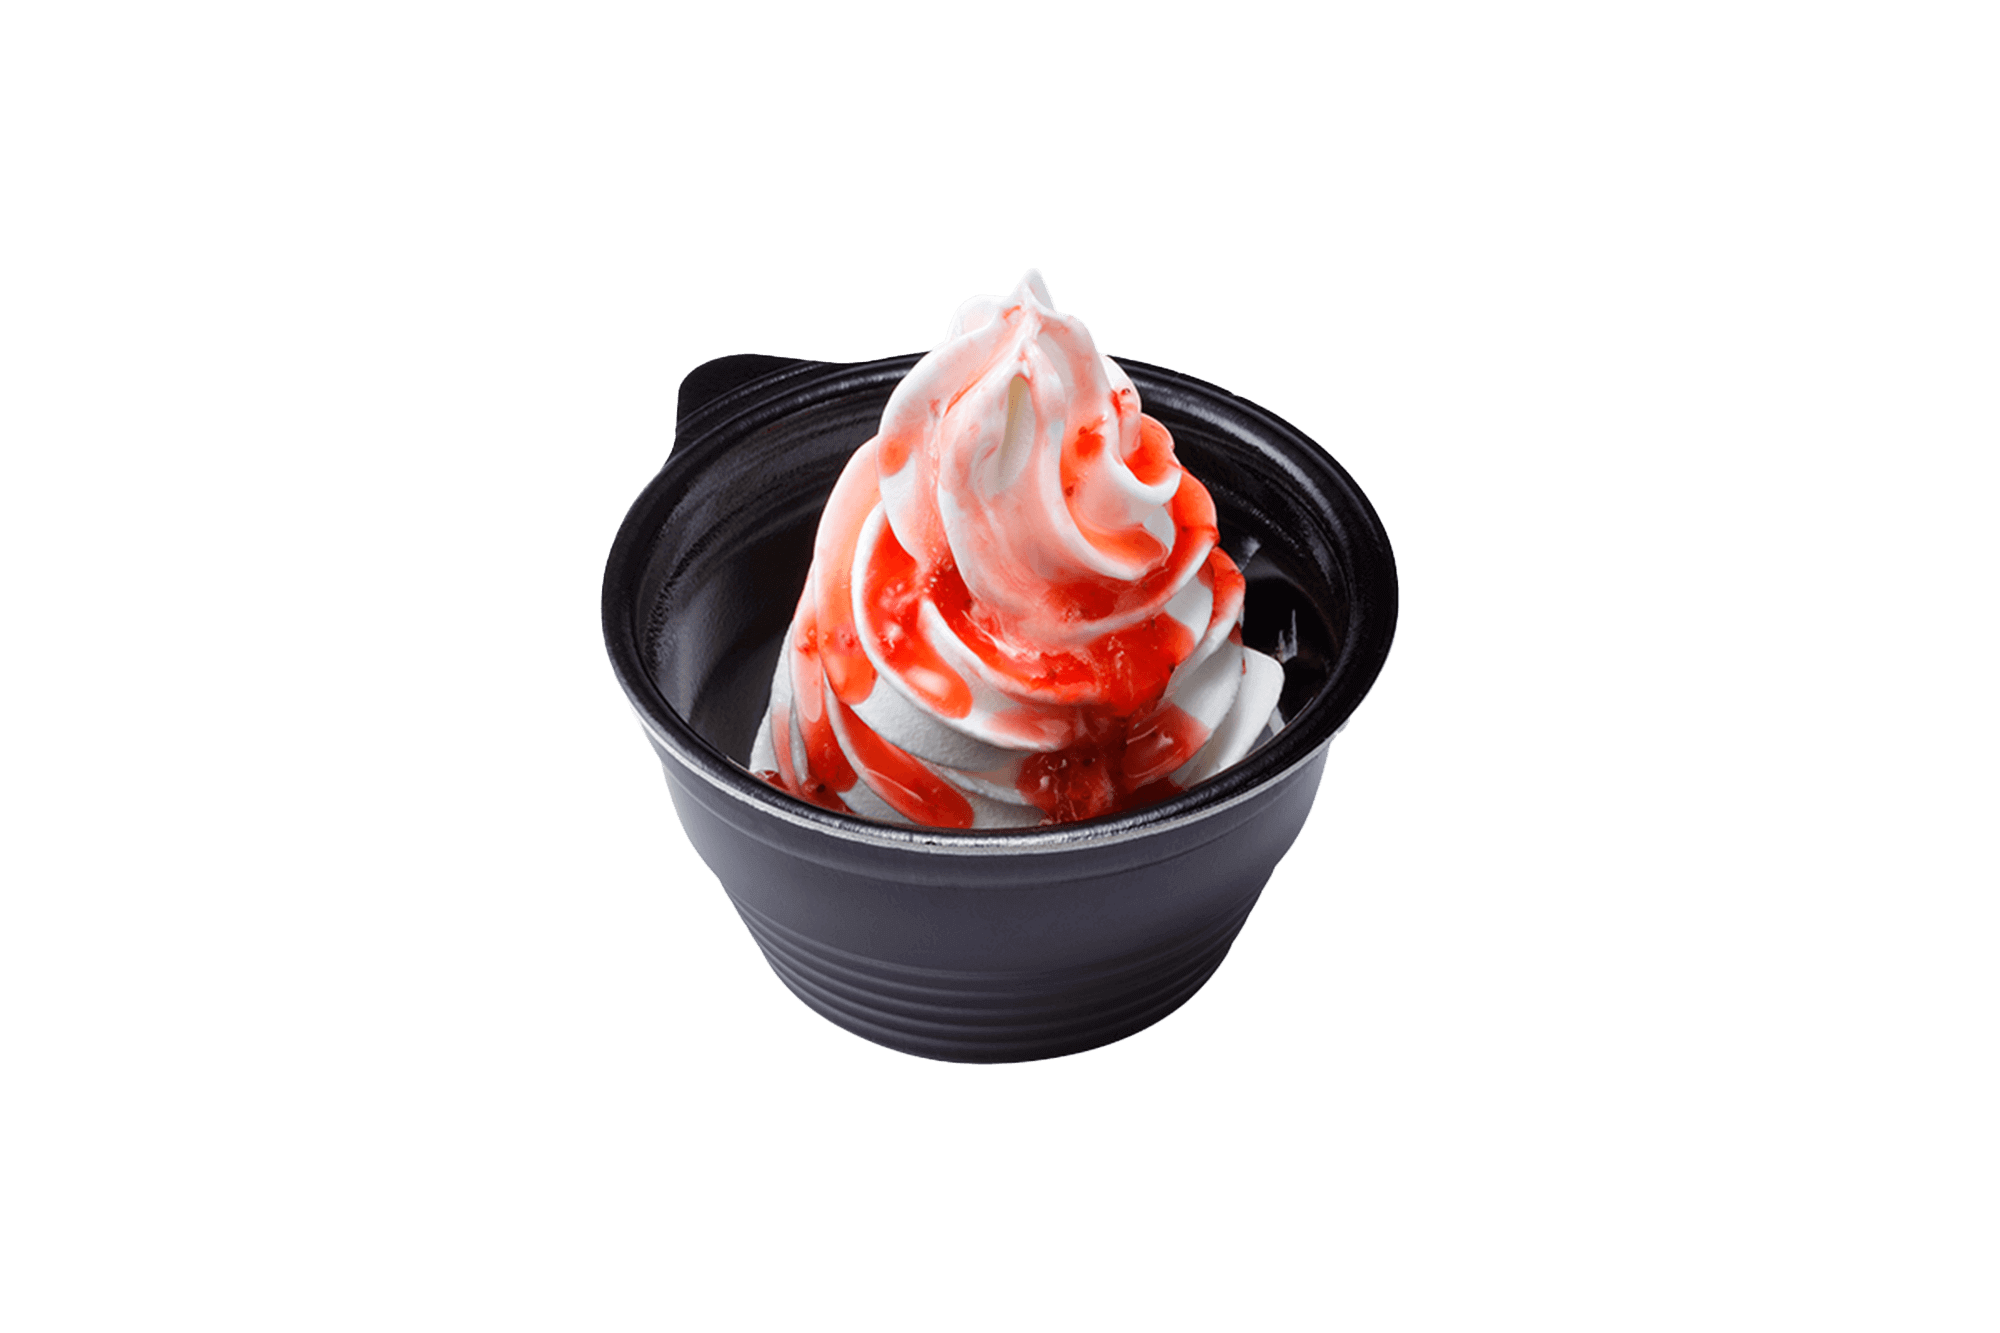 びっくりドンキーの『テイクアウト 北海道ソフトクリーム(イチゴソース)』